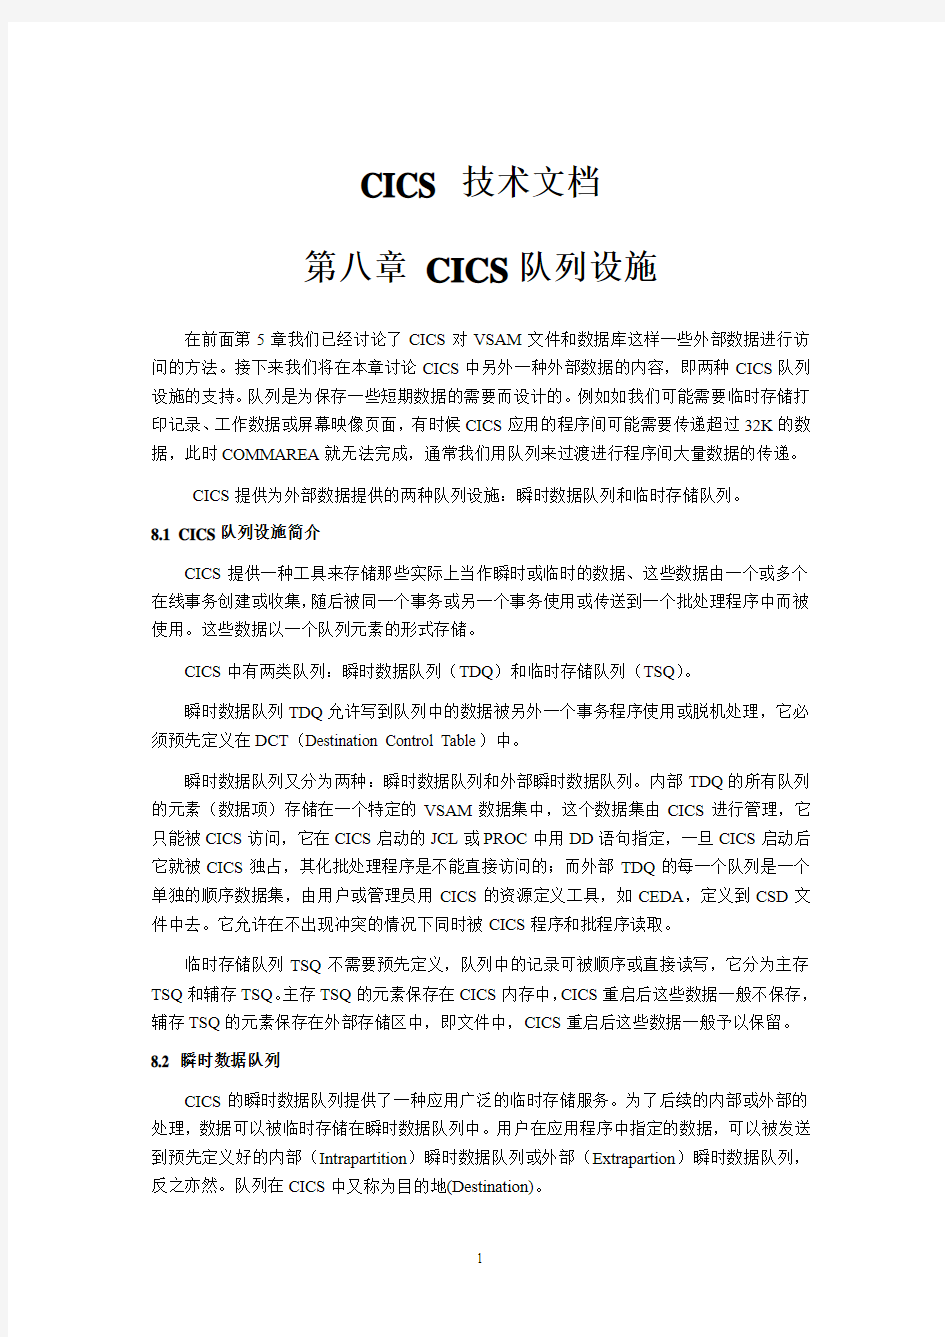 第8章_CICS队列设施--CICS 技术文档08